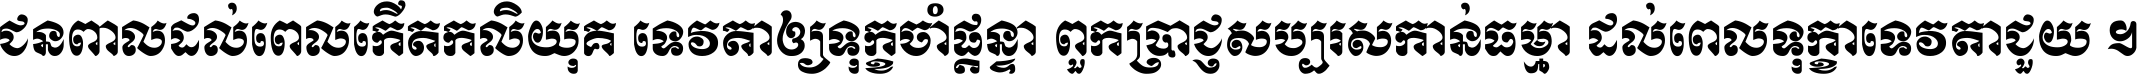 Khmer Chhay Round 1